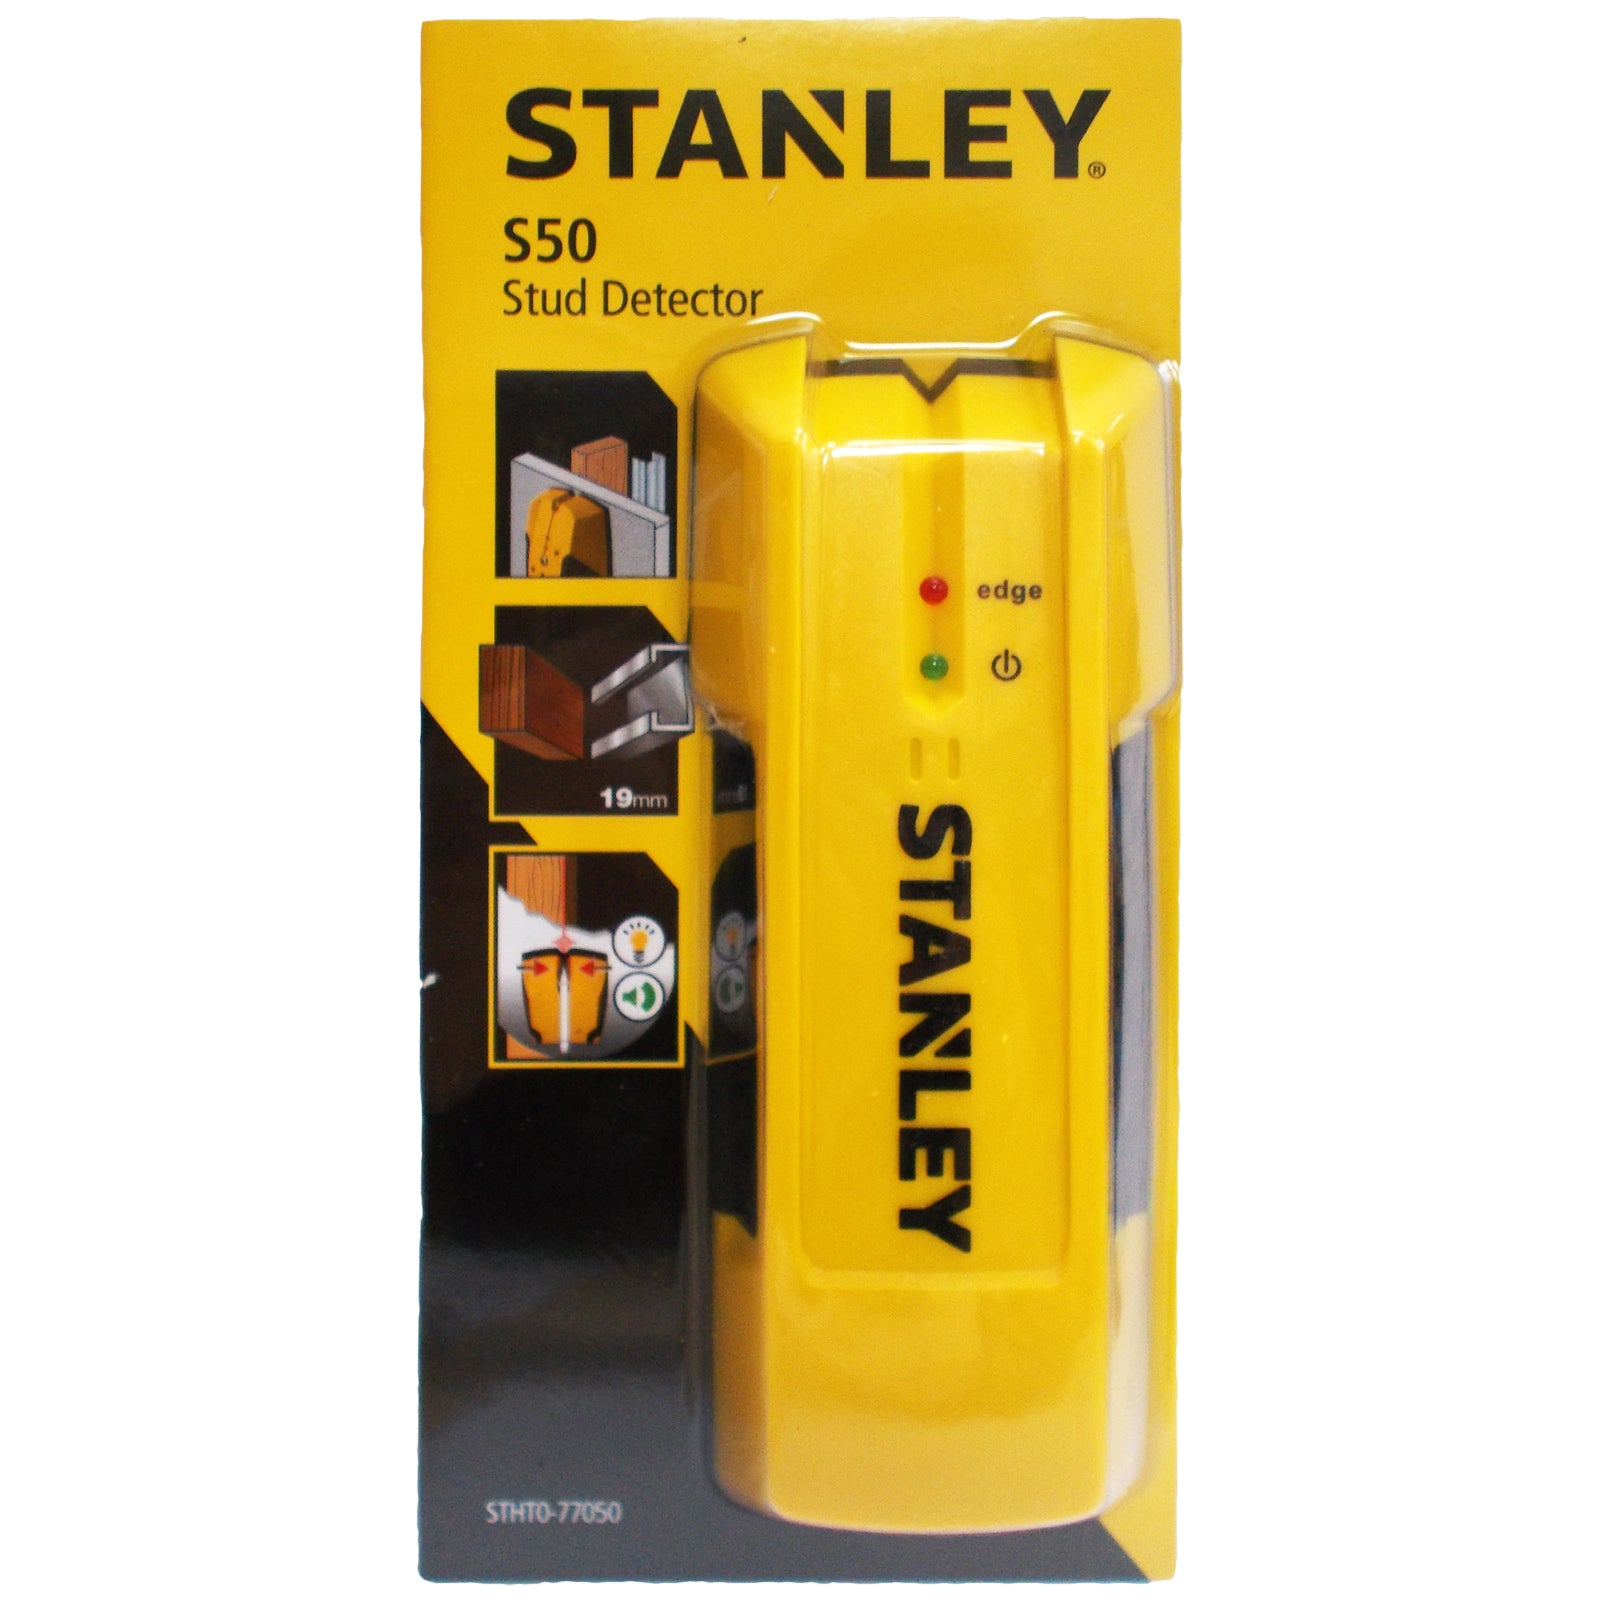 Stanley S50 Stud Detector